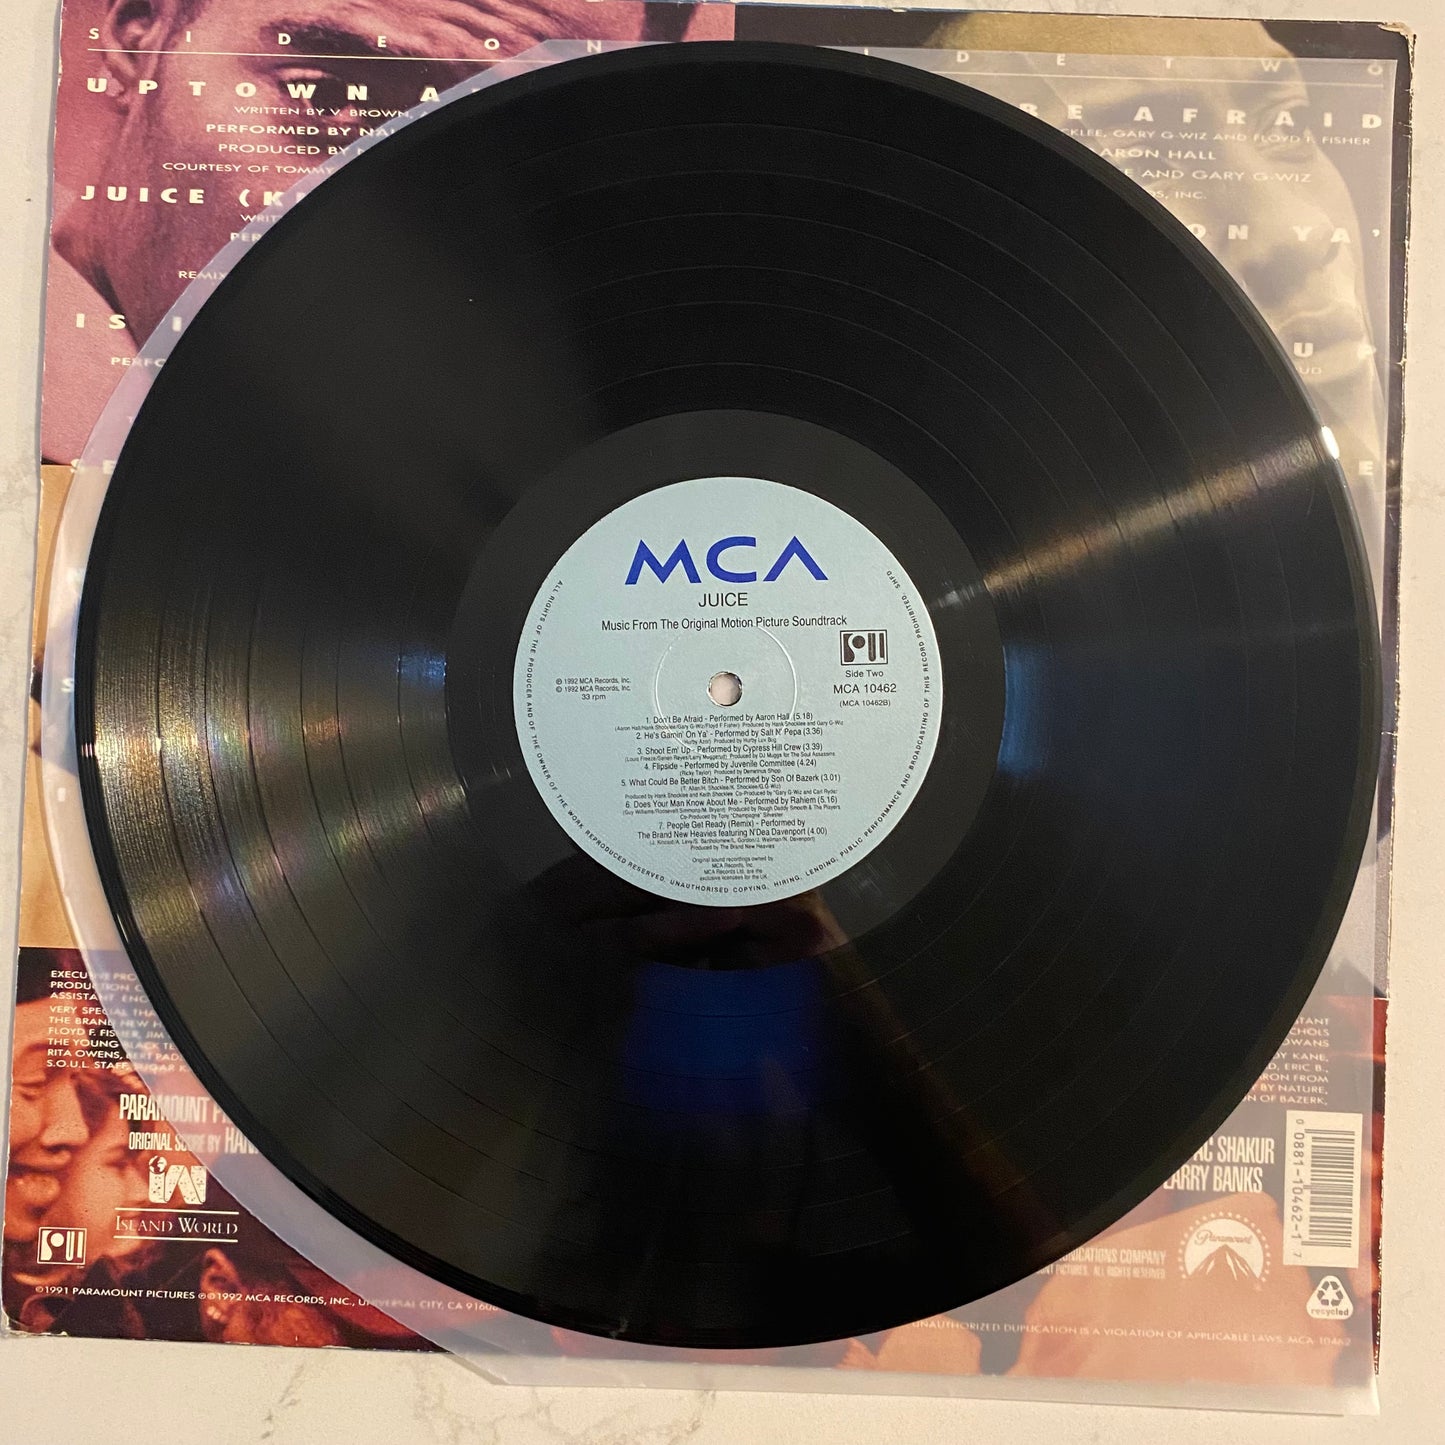 Big Daddy Kane - Long Live The Kane (LP, Album) (L)